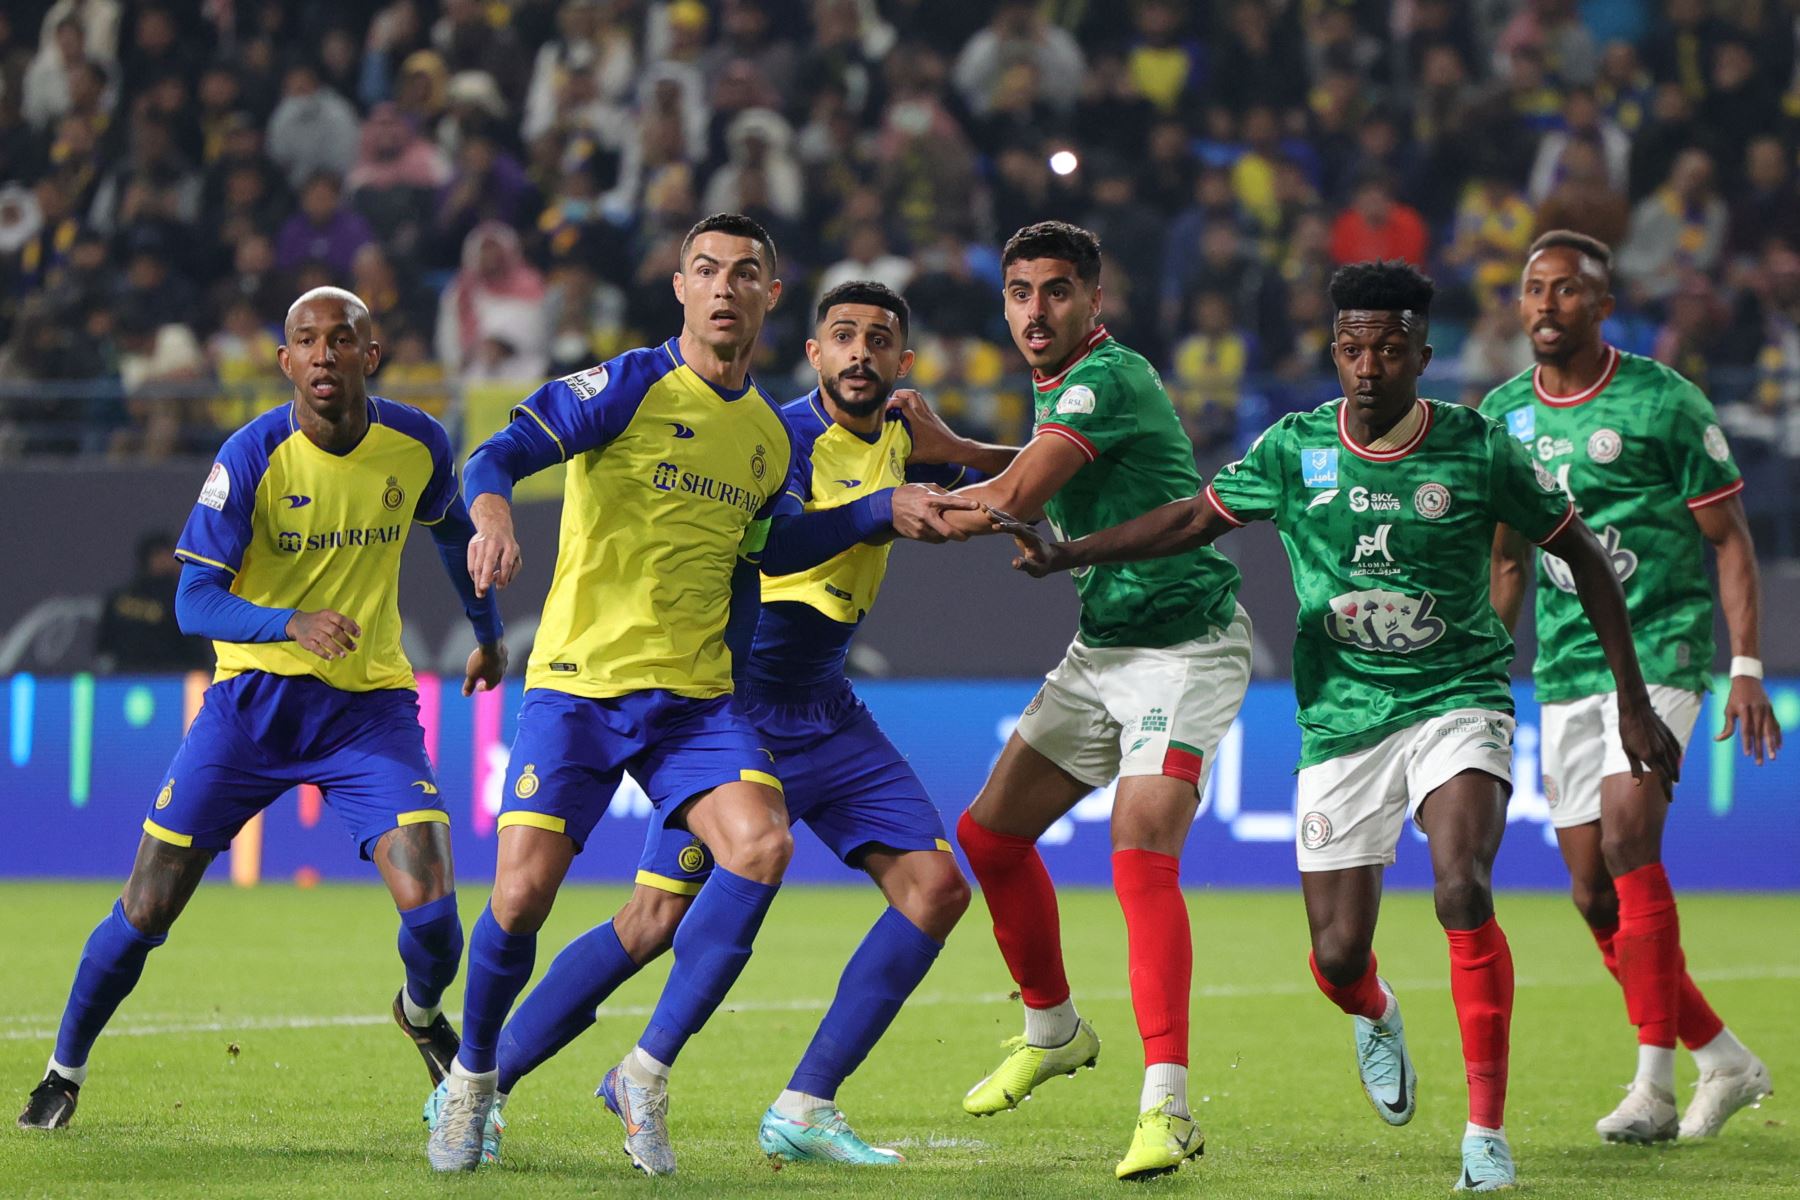 El delantero portugués de Nassr, Cristiano Ronaldo (2.° a la izquierda), lucha por la posición para un tiro de esquina durante el partido de fútbol de la Saudi Pro League entre Al-Nassr y Al-Ettifaq en el estadio King Fahd de la capital saudí, Riad, el 22 de enero de 2023.


Foto: AFP